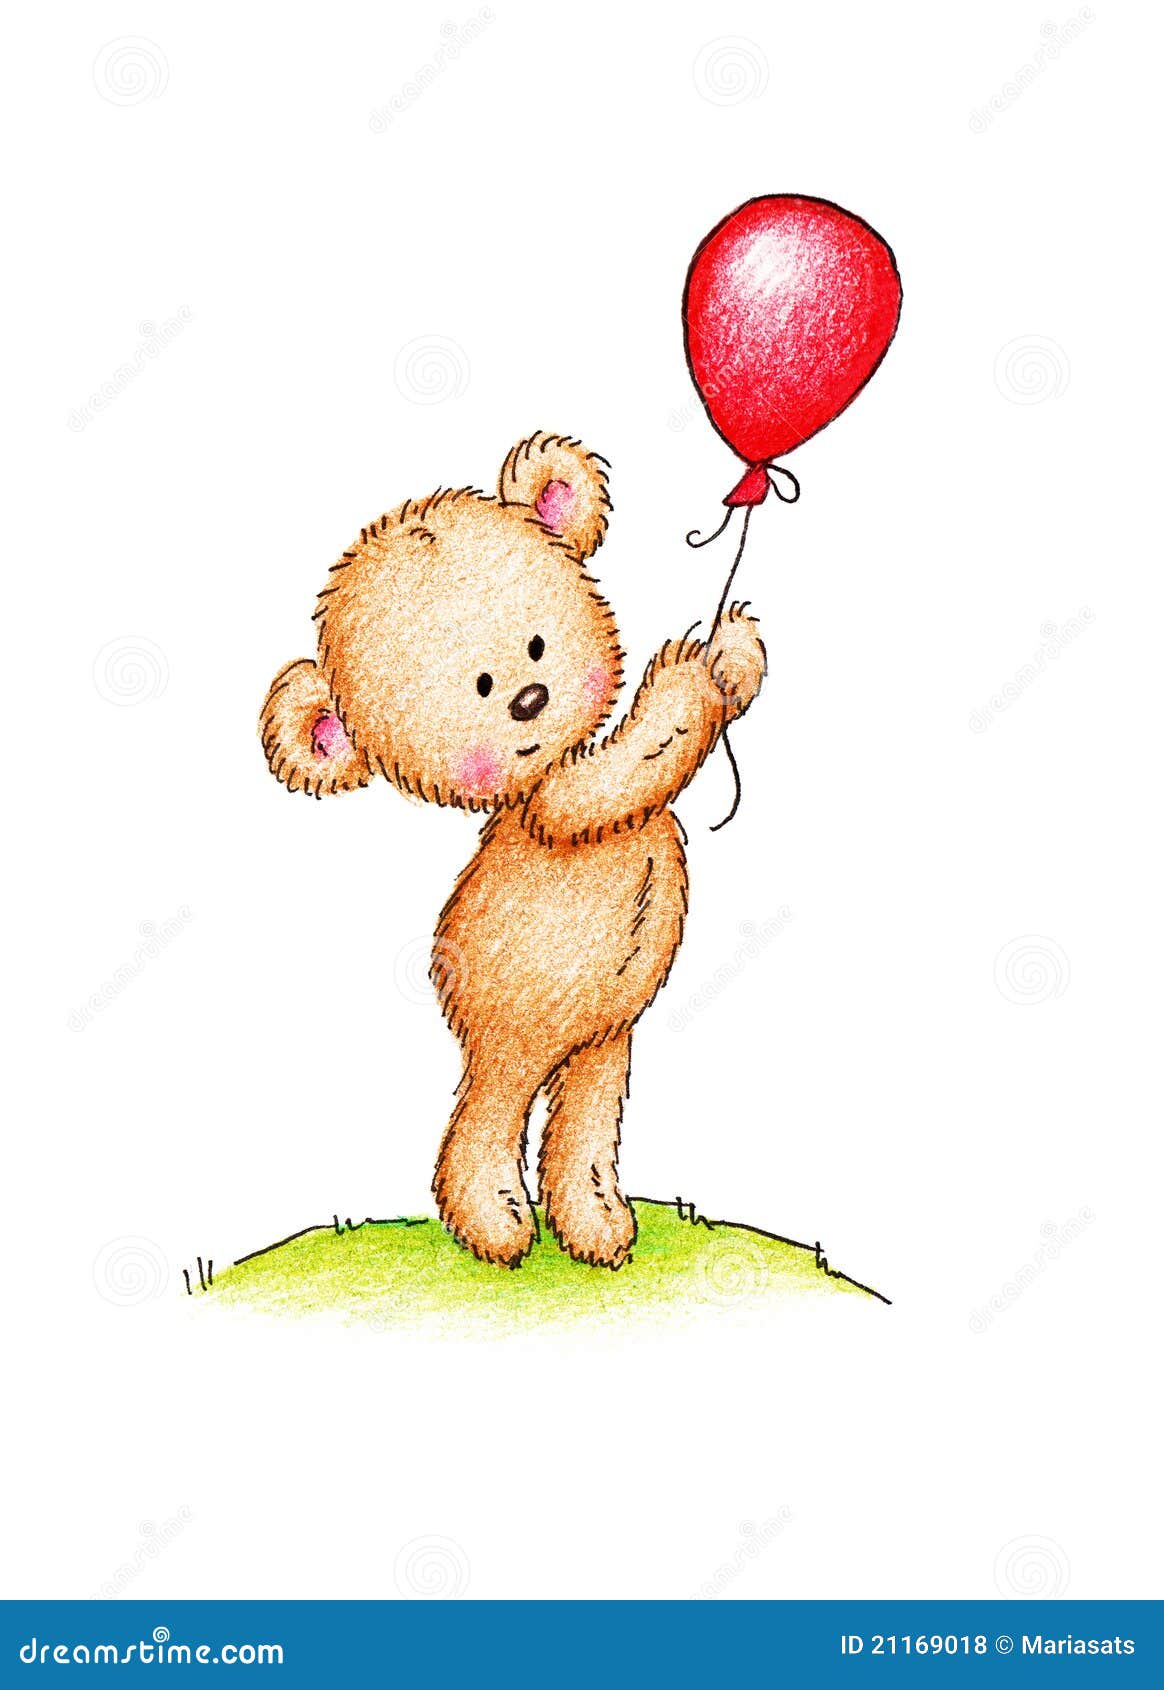 teddy bear holding balloons clipart - photo #20